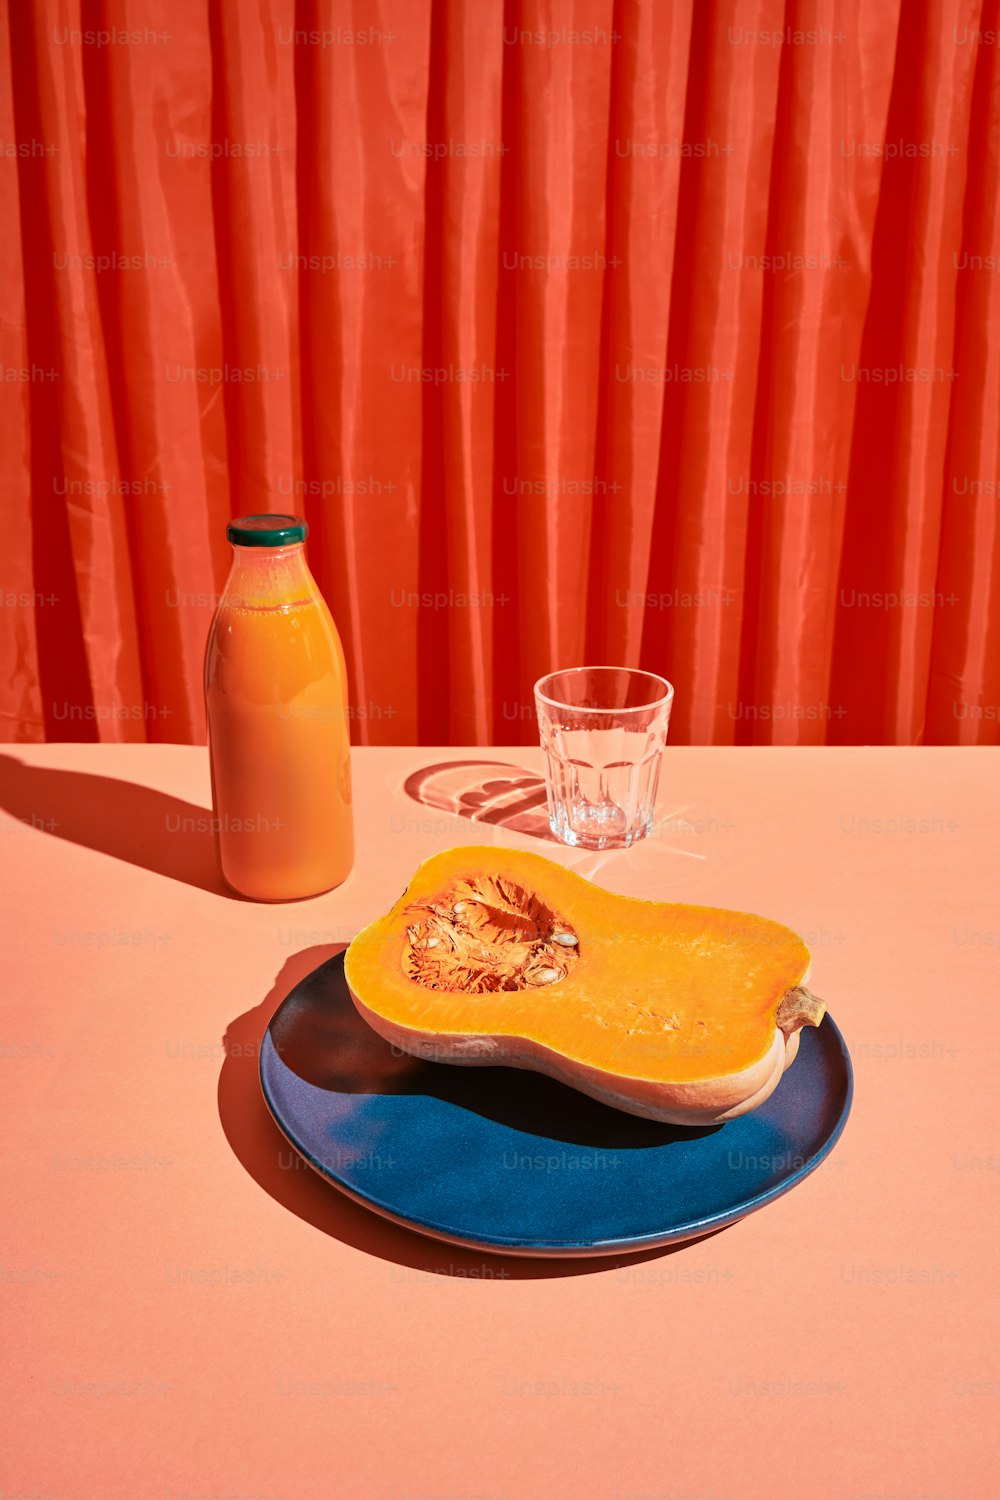 um copo de suco de laranja ao lado de uma abóbora amanteigada amanteigada